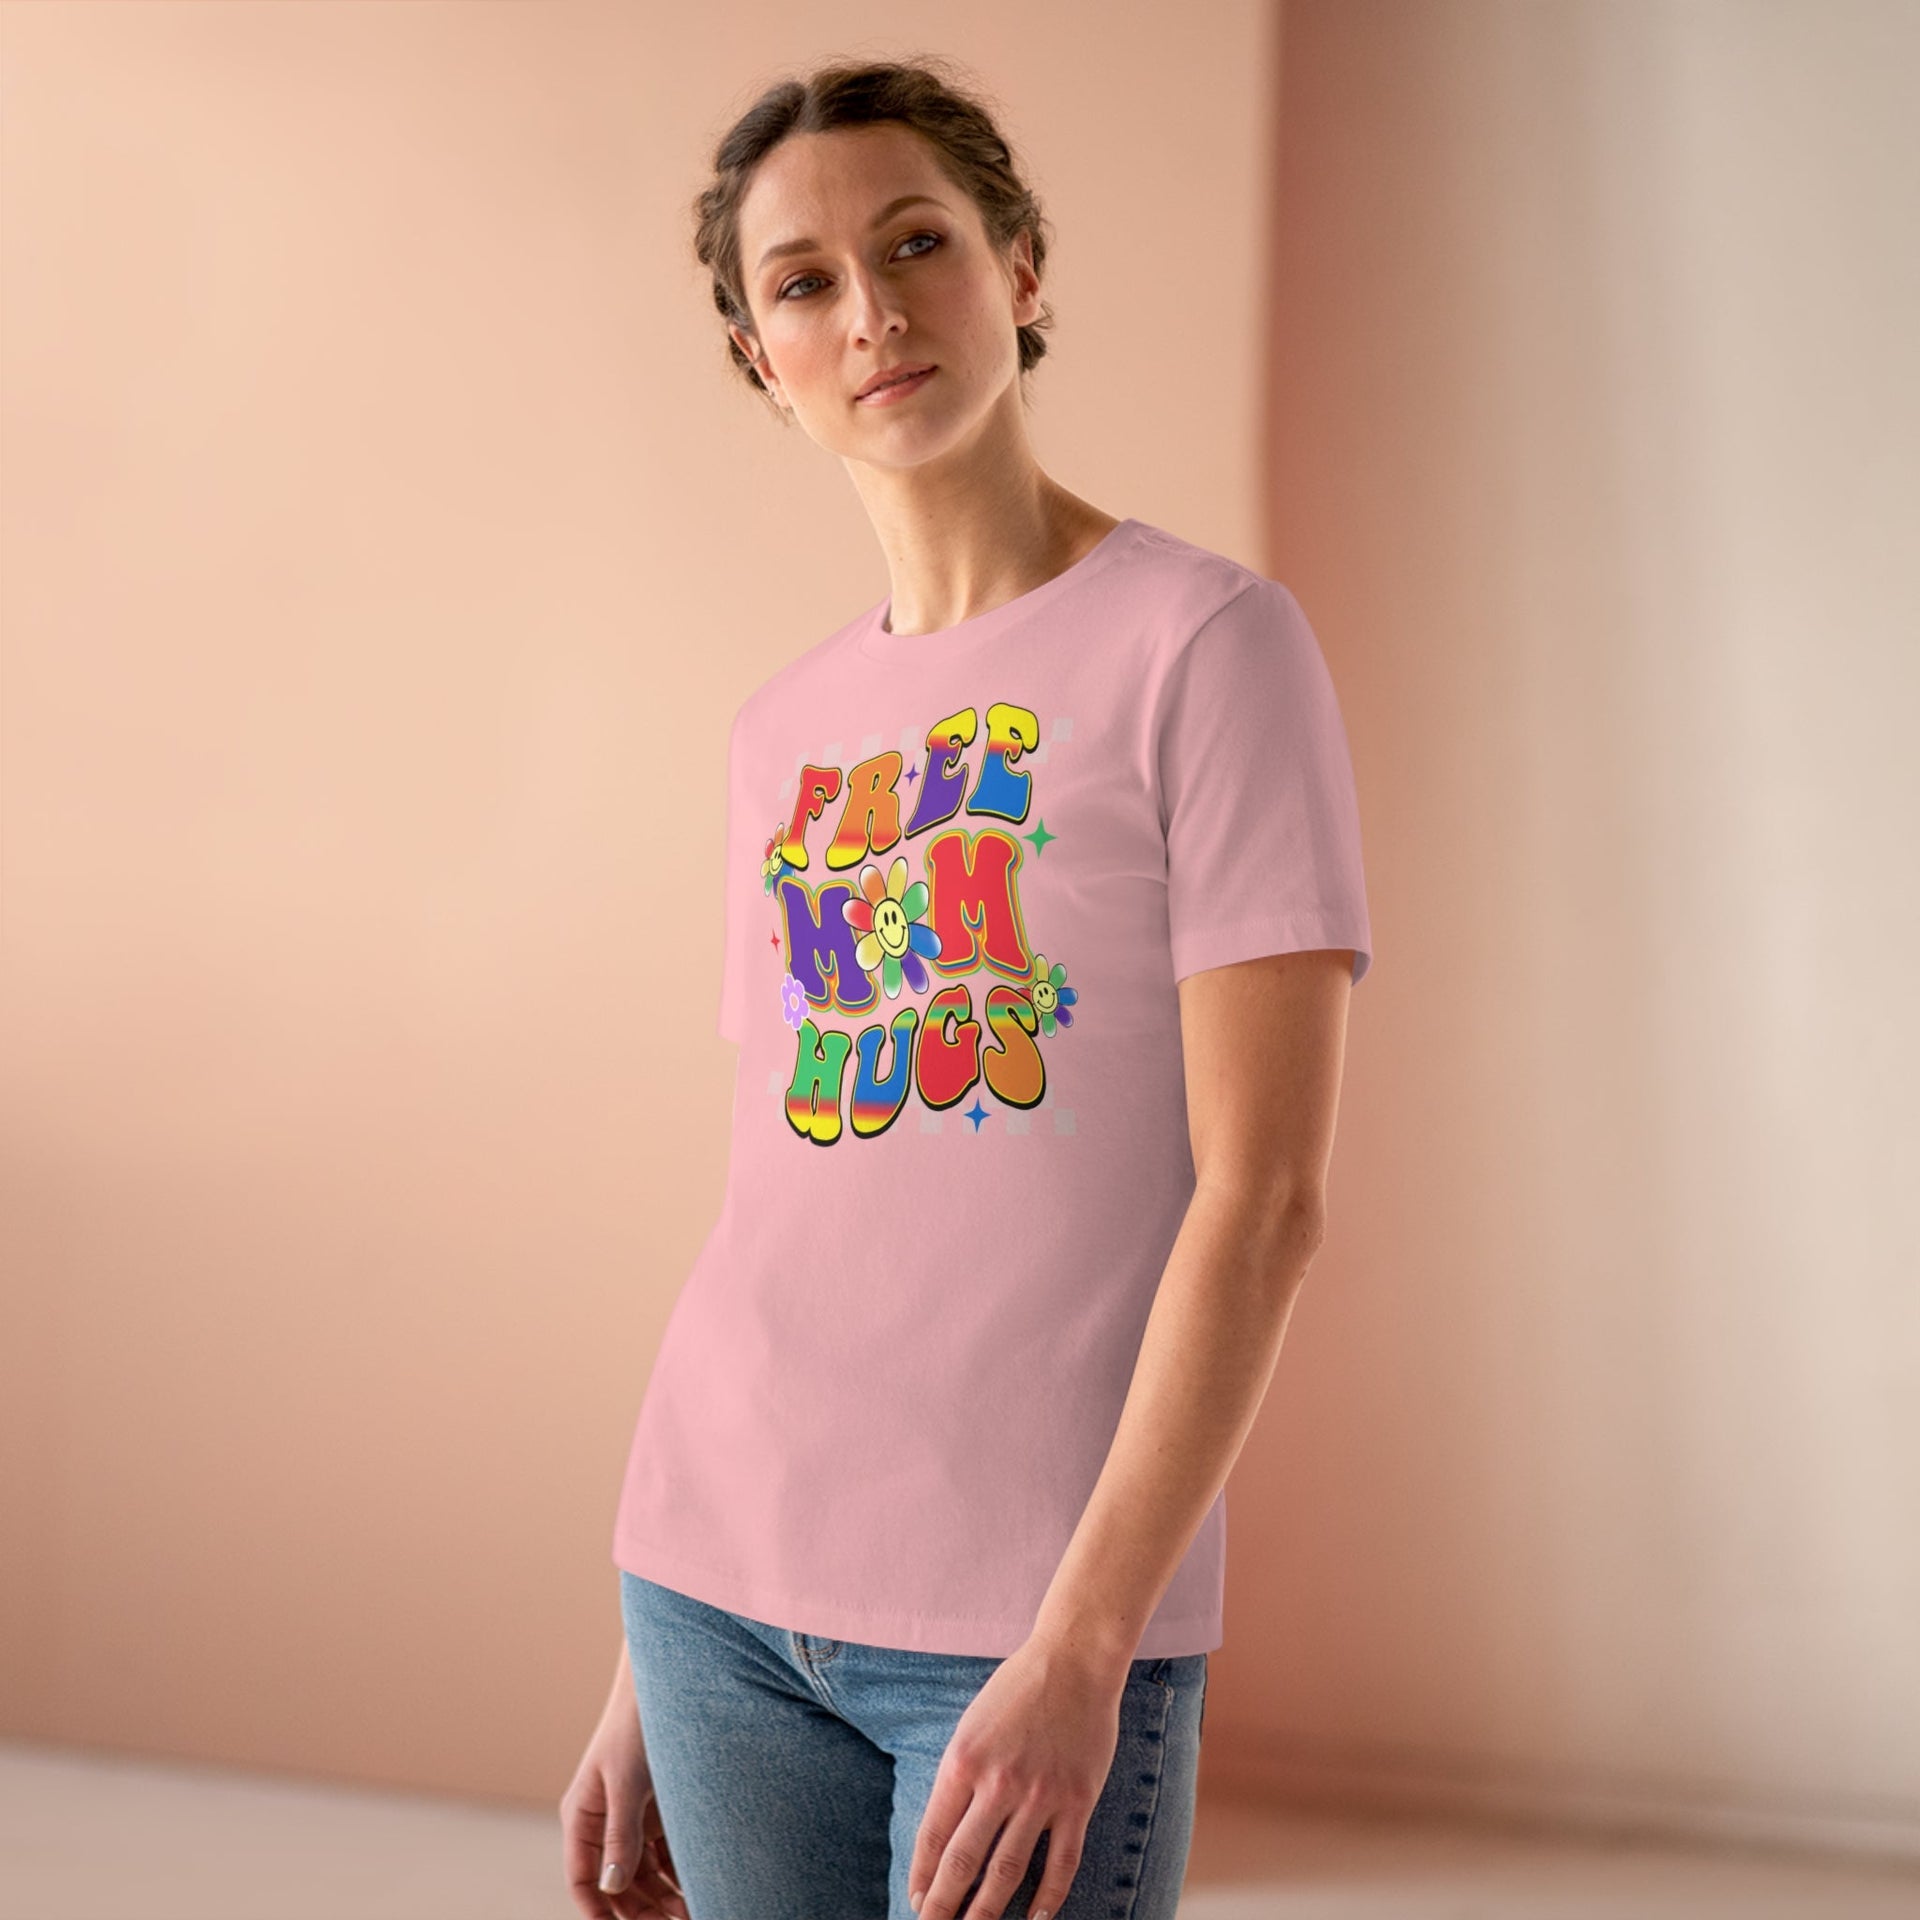 Free MOM Hugs Ladies Tee Pink S T-Shirt by Printify | Akron Pride Custom Tees